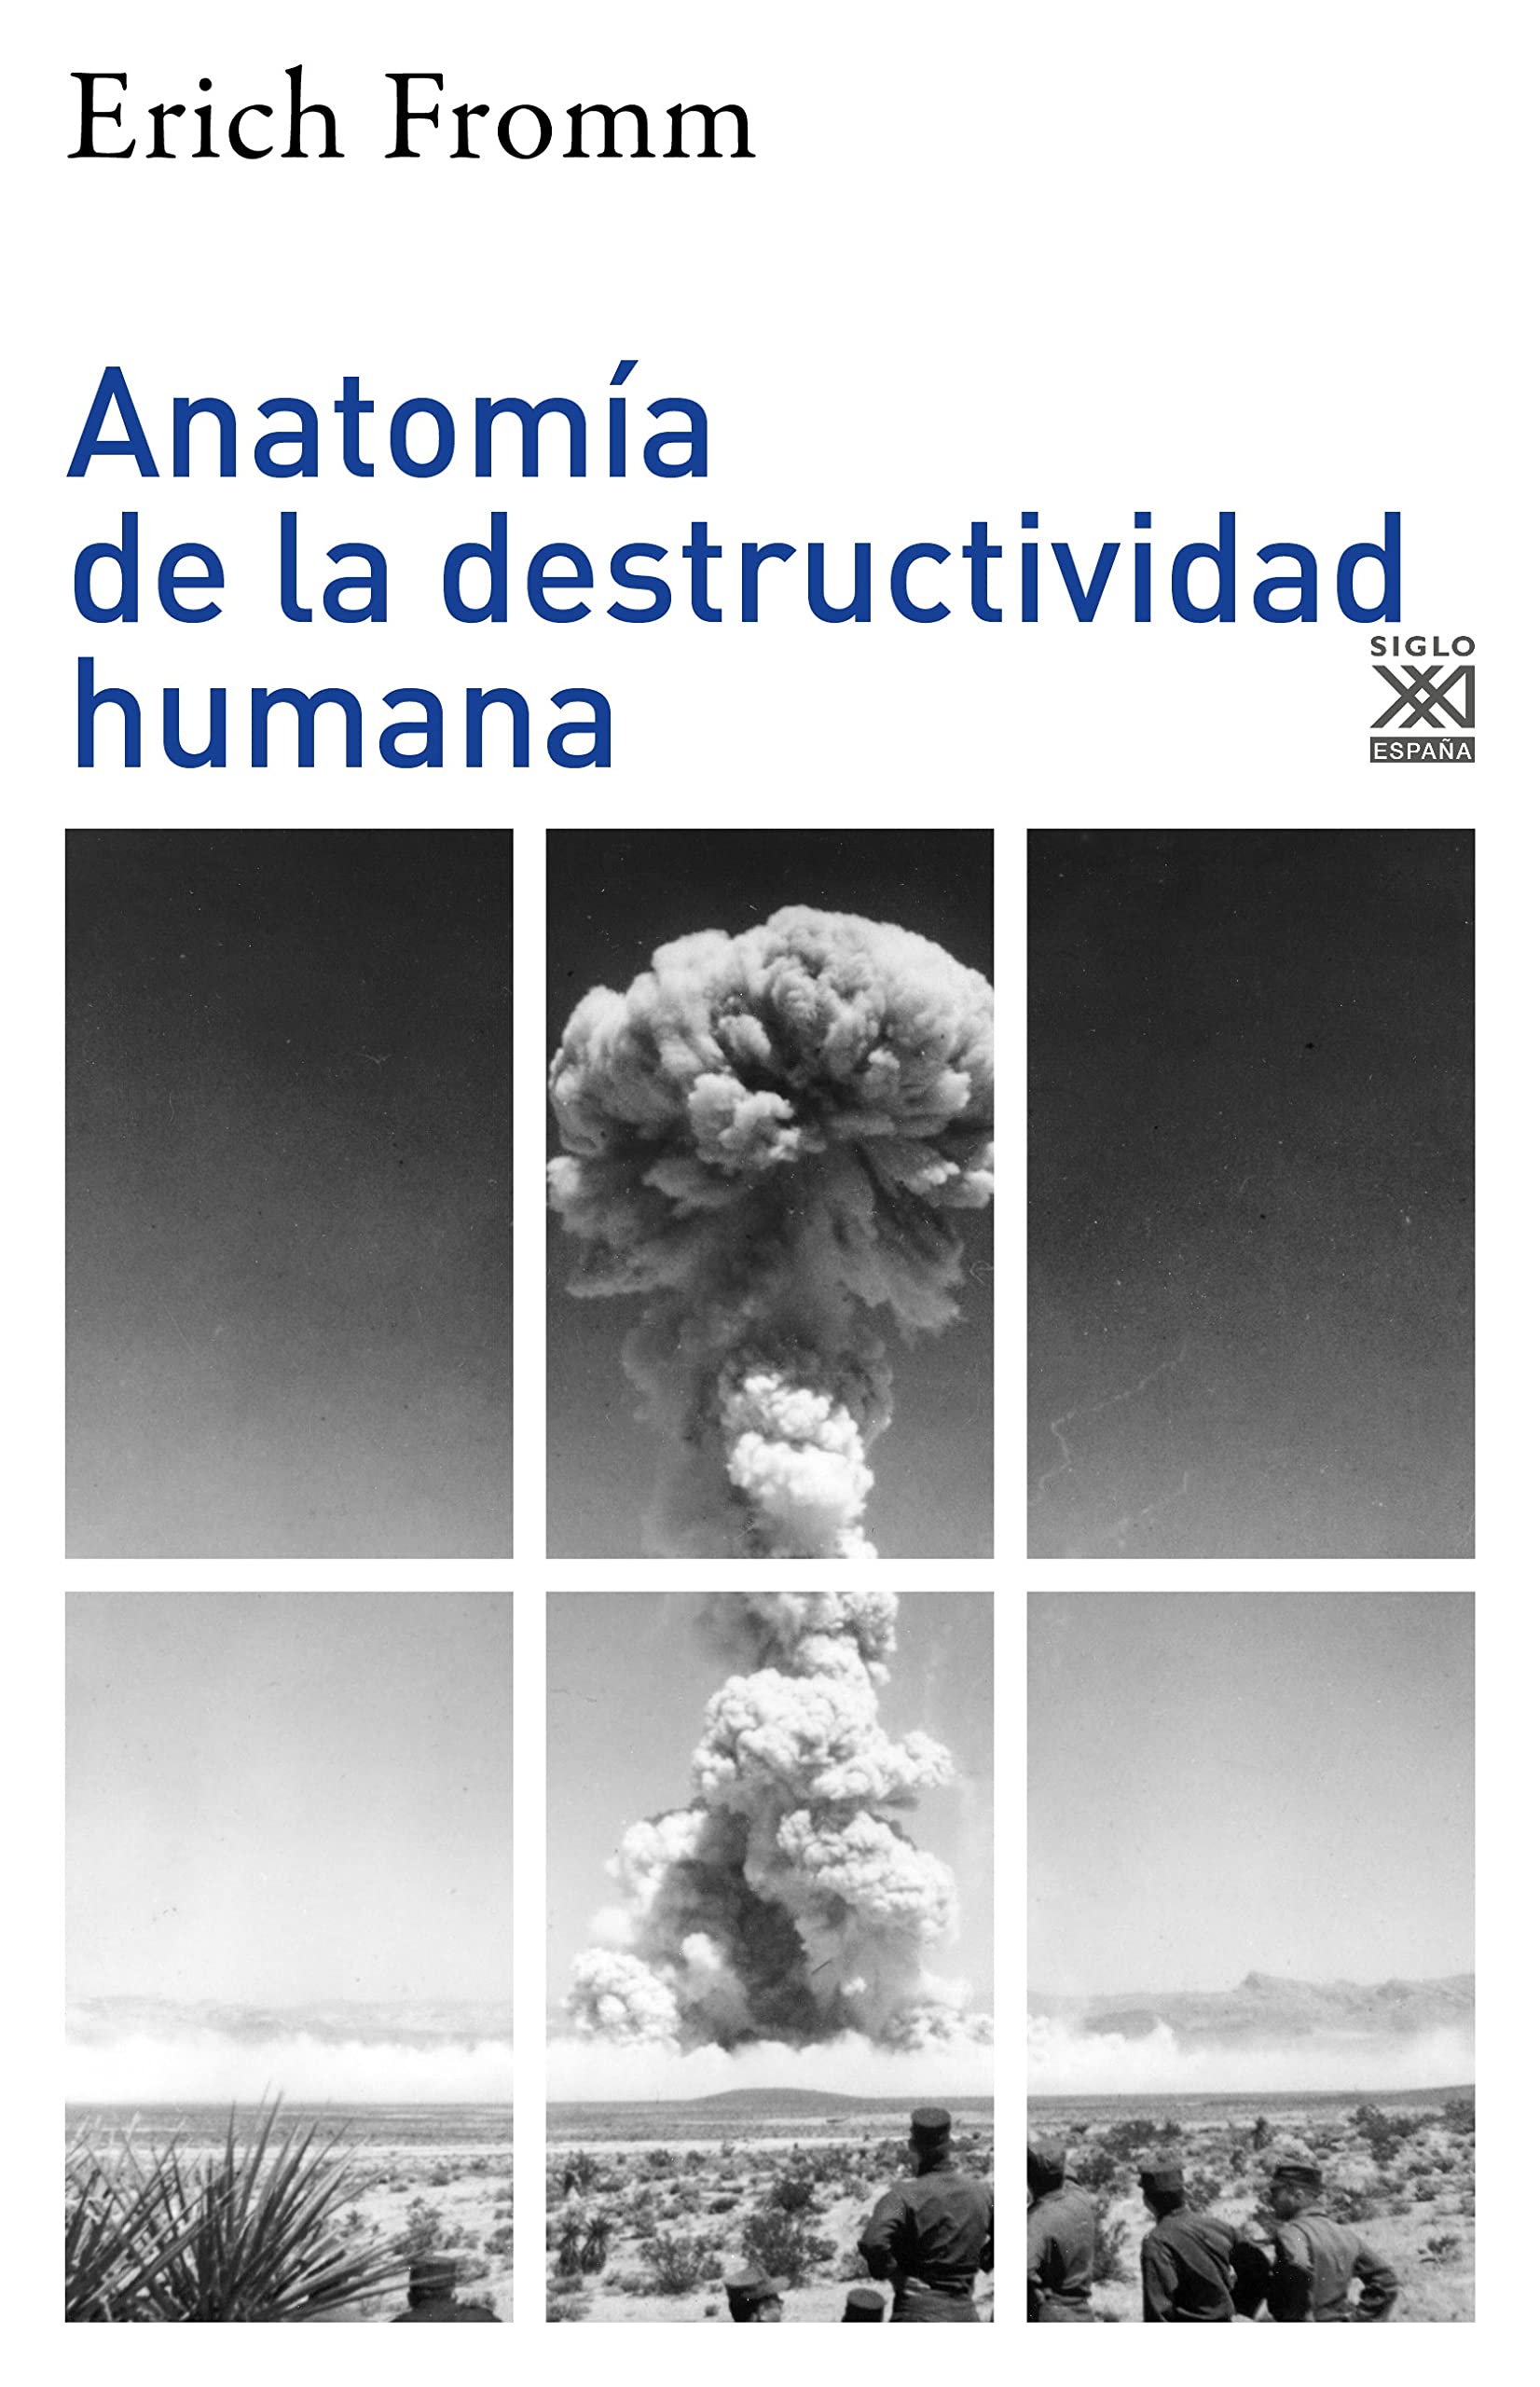 Zenda recomienda: Anatomía de la destructividad humana, de Erich Fromm